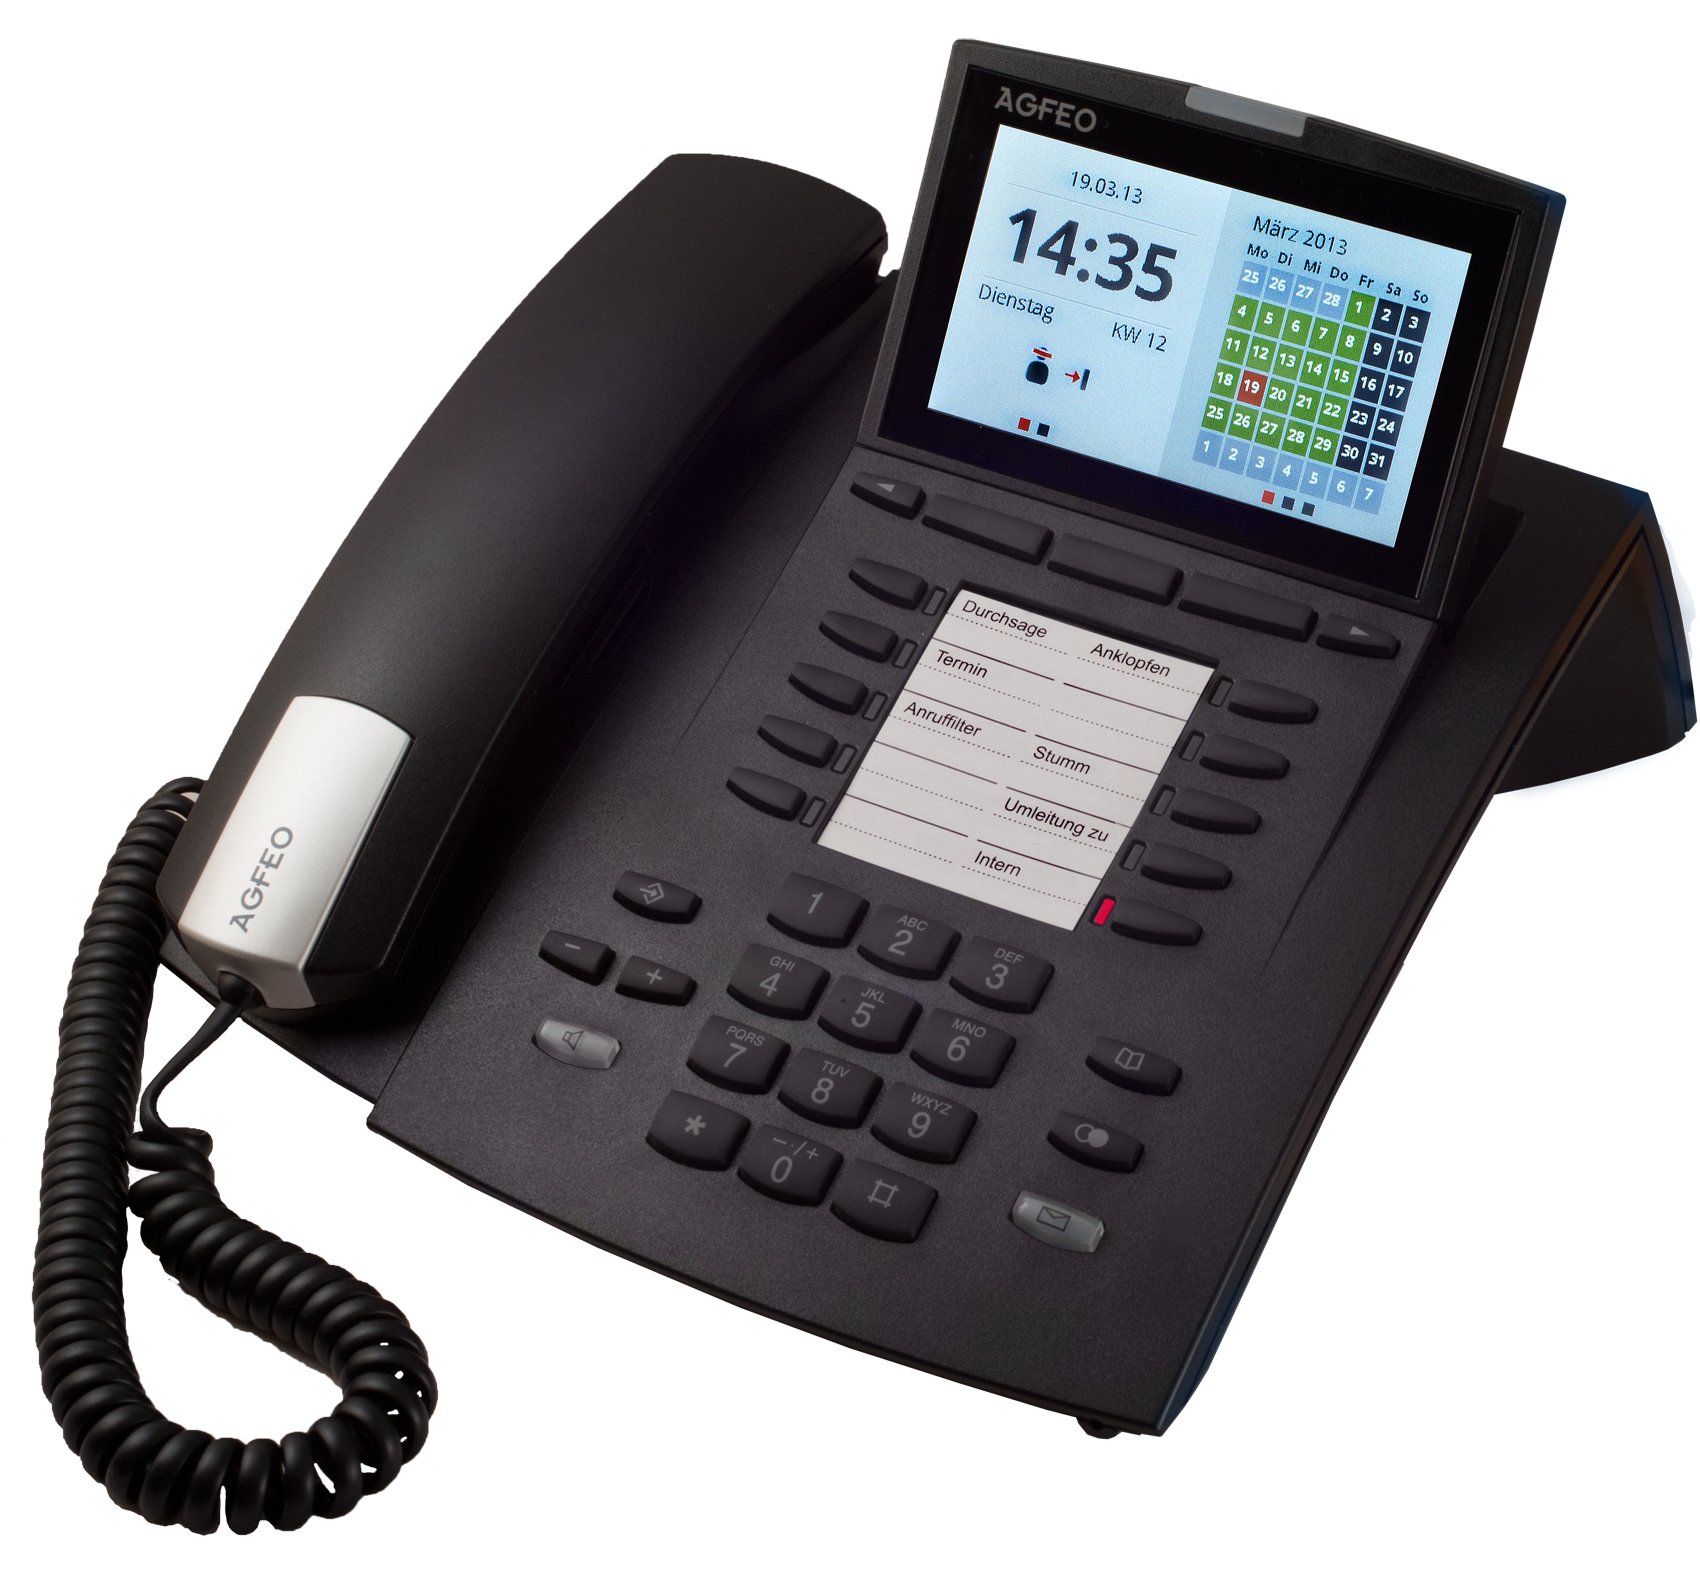 Agfeo ST45 Systemtelefon für Büroprofis (10,9 cm (4,3 Zoll) Display, VIPlight, Timerfunktion) schwarz